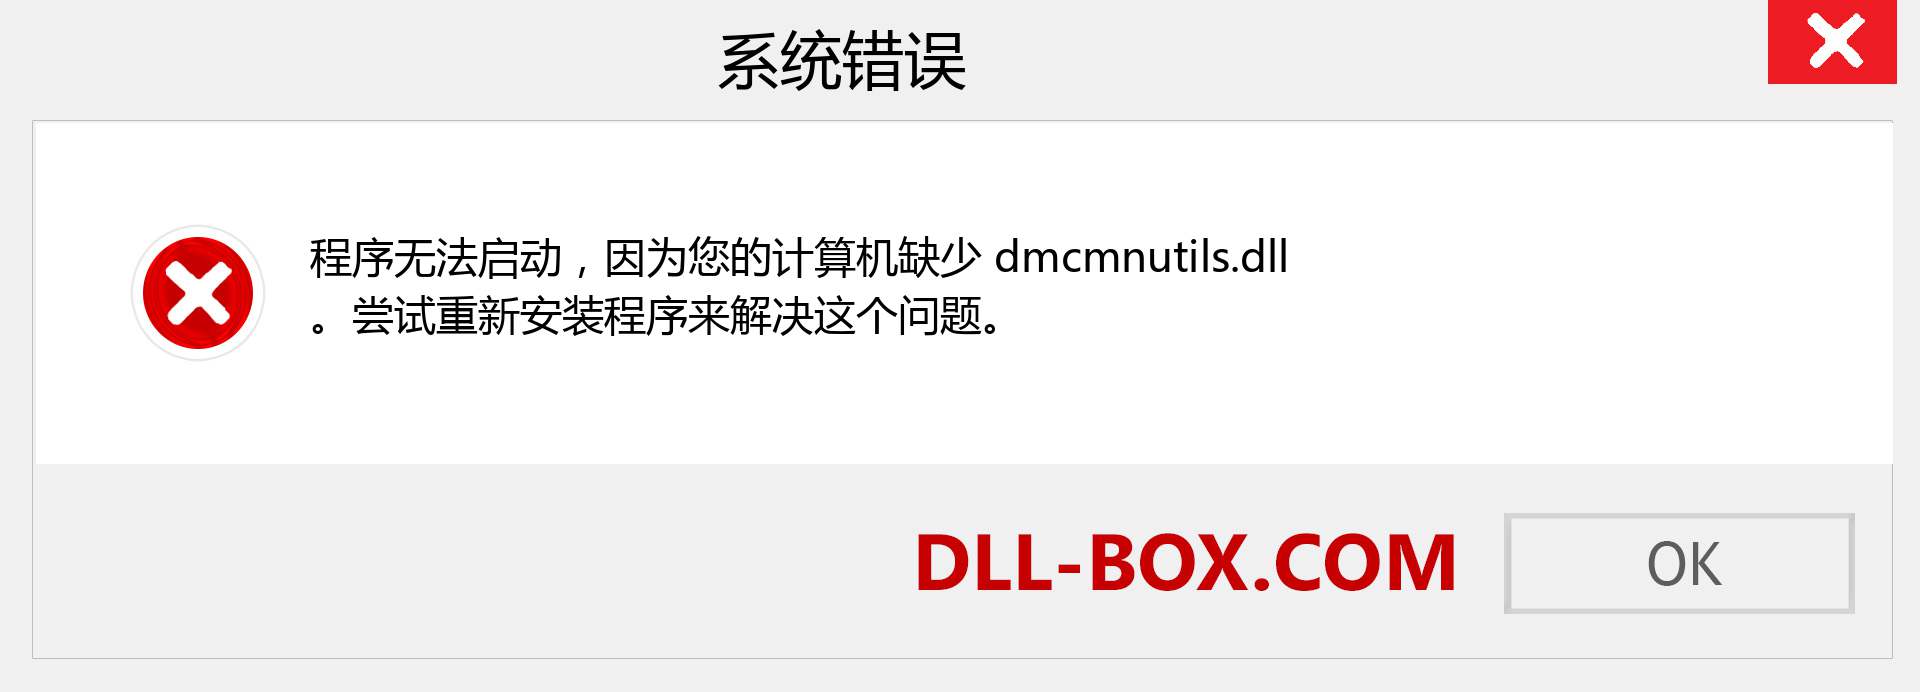 dmcmnutils.dll 文件丢失？。 适用于 Windows 7、8、10 的下载 - 修复 Windows、照片、图像上的 dmcmnutils dll 丢失错误